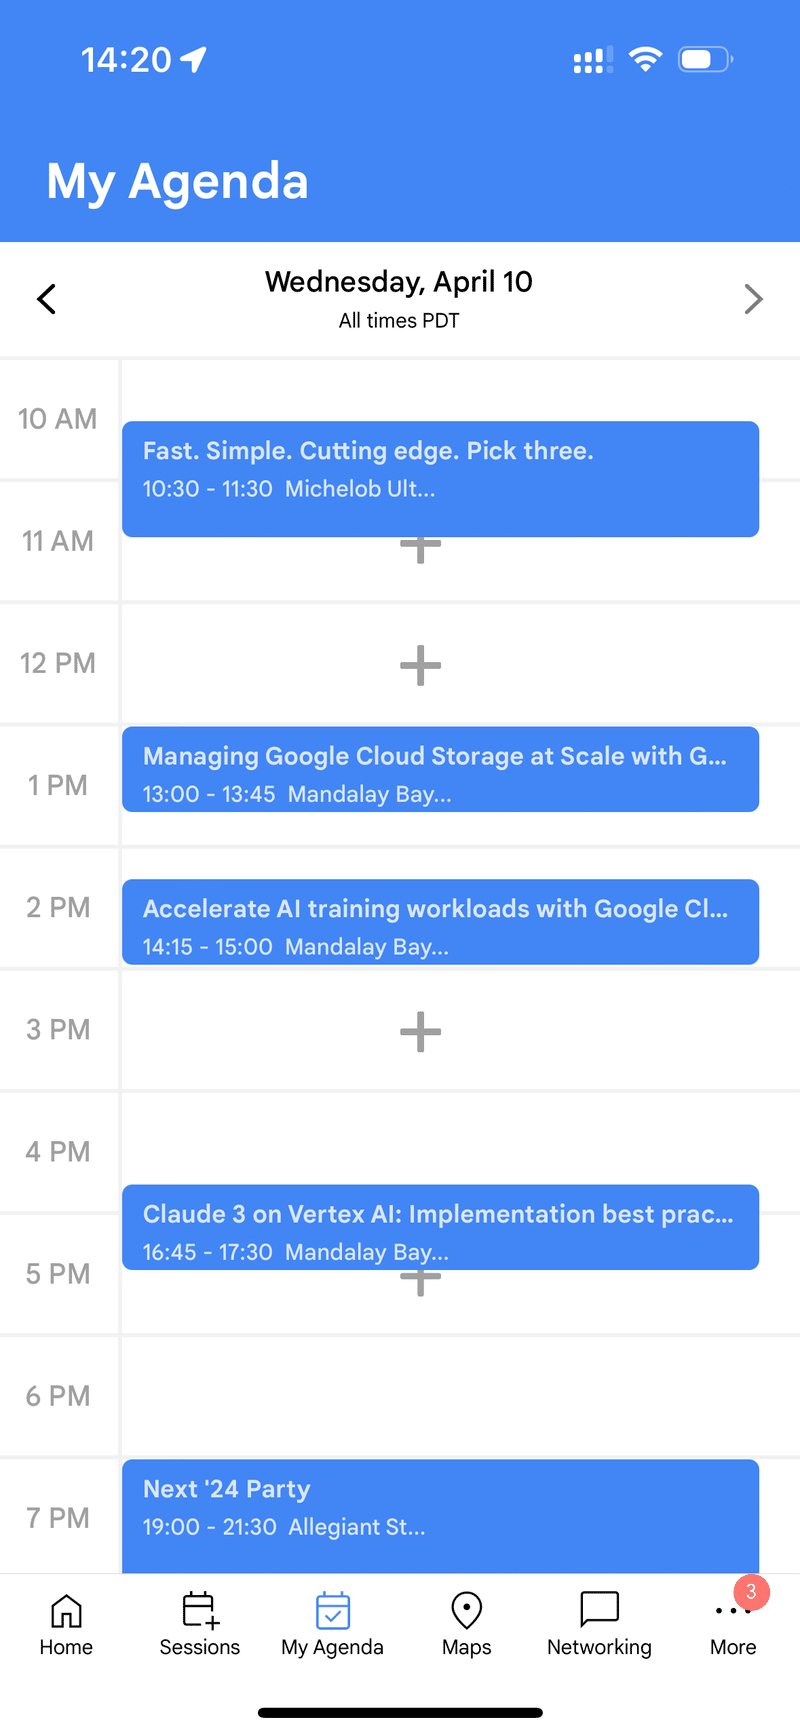 iOSアプリのスクリーンショットです。カレンダーUIが表示されています。各時間帯ごとに、イベントのブロックが表示されています。